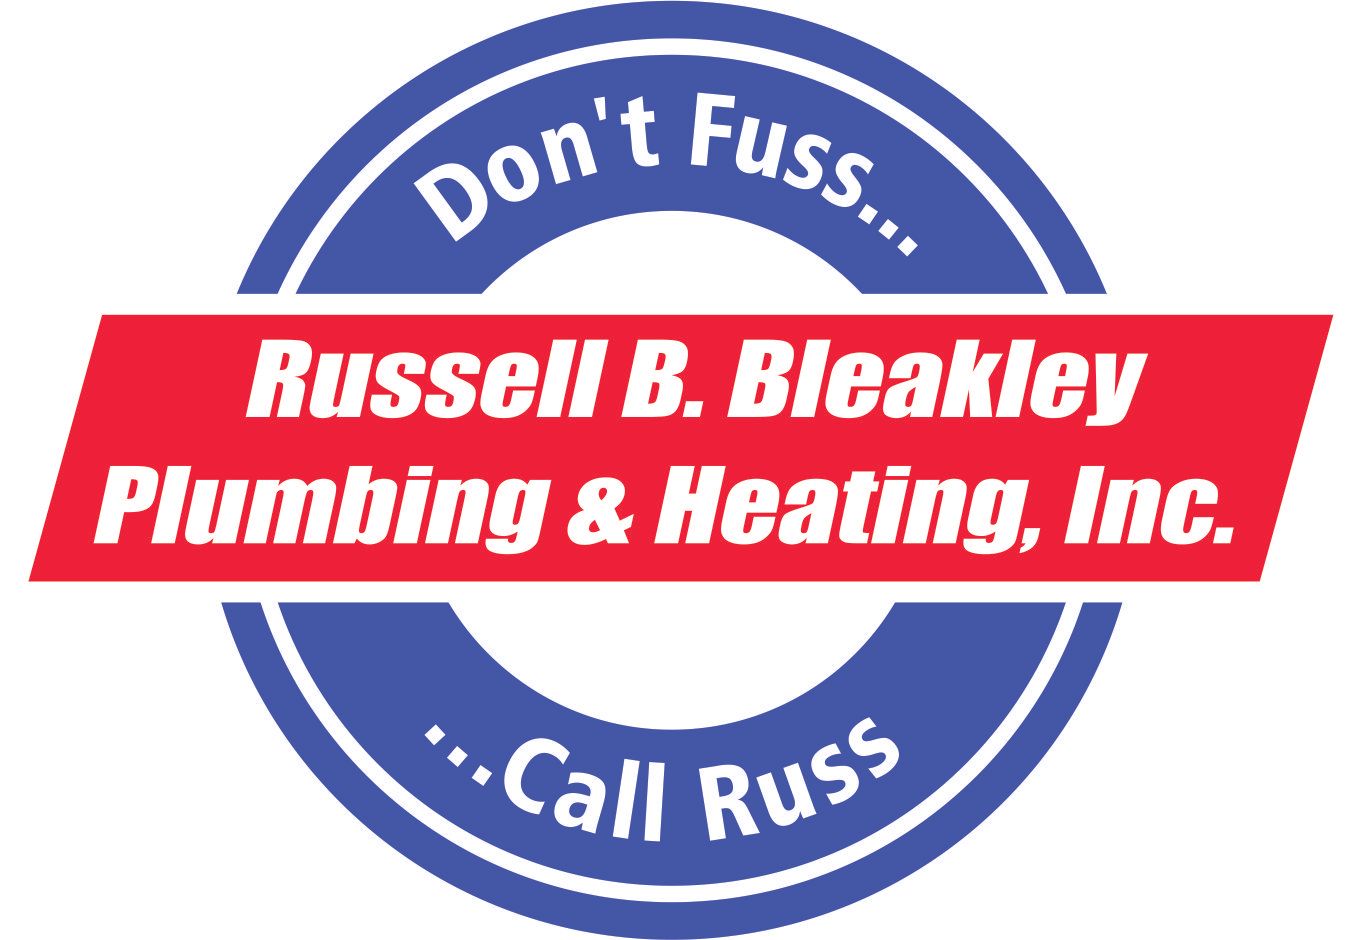 Russell B. Bleakley Plumbing & Heating, Inc.